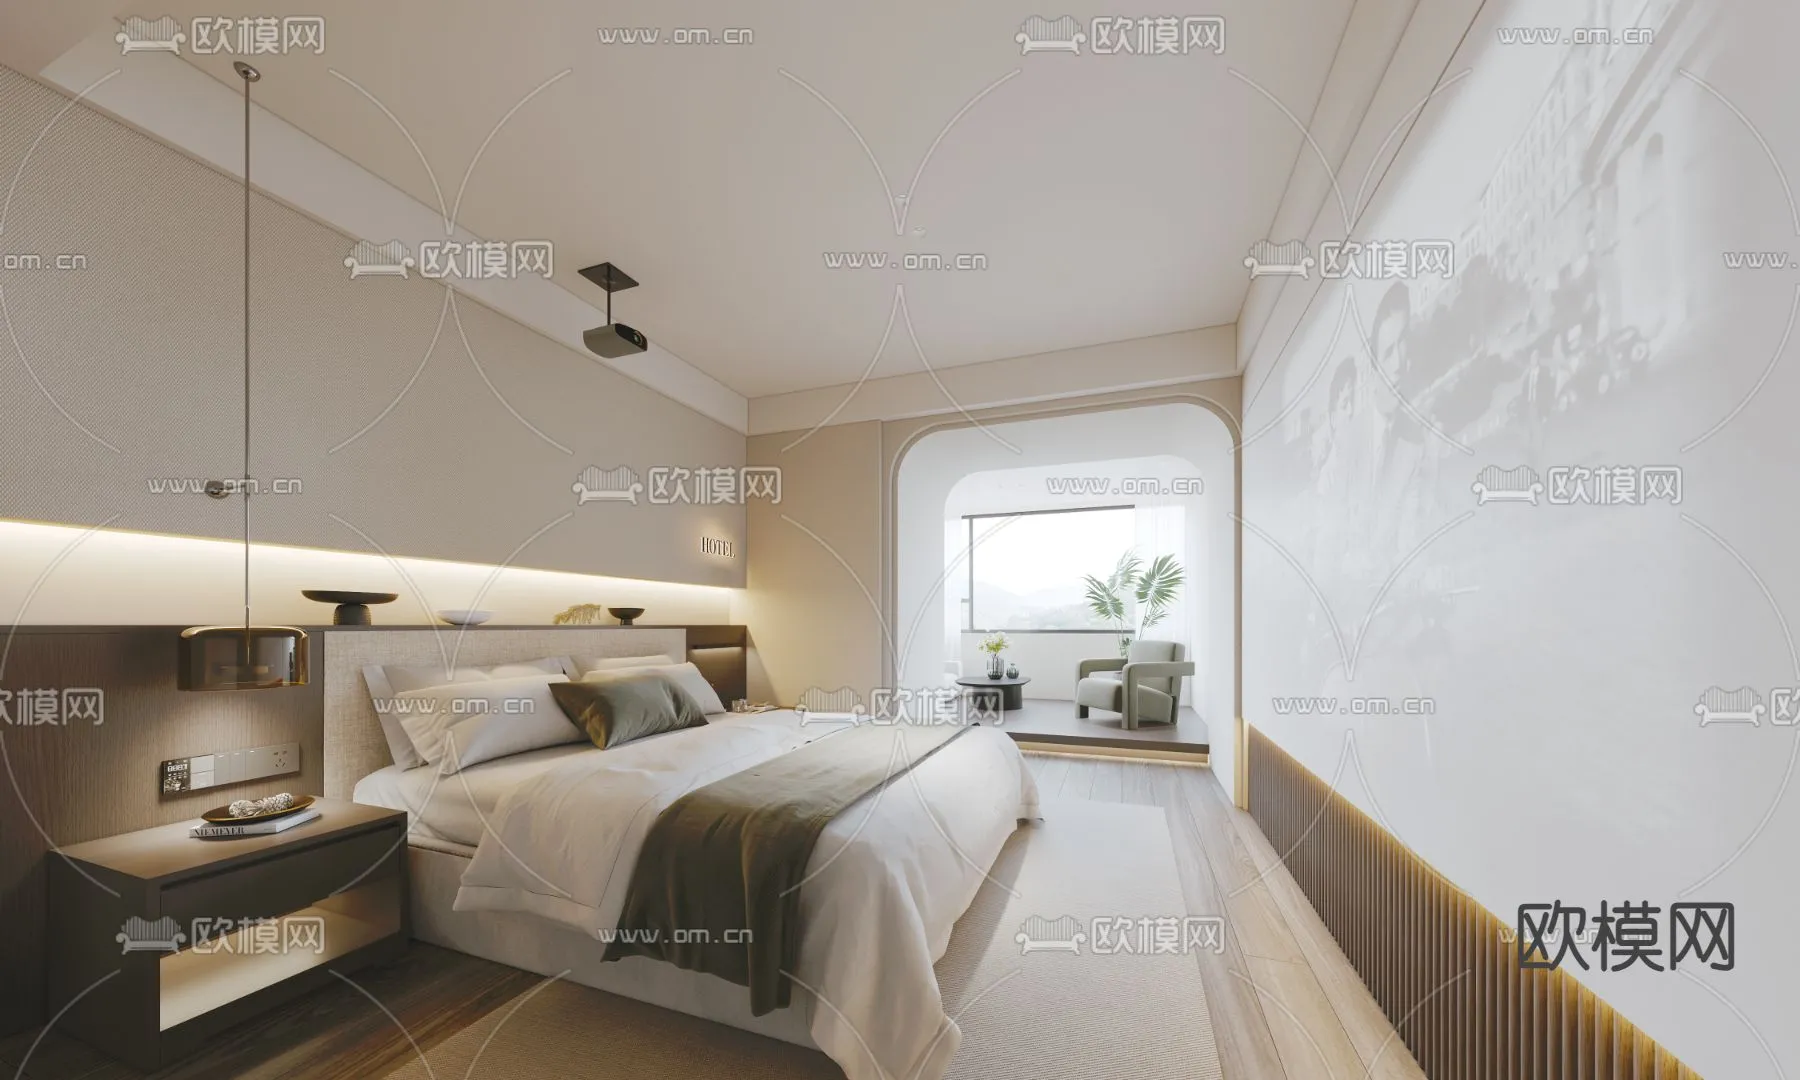 Hotel Room – Bedroom For Hotel 3D Models – 003